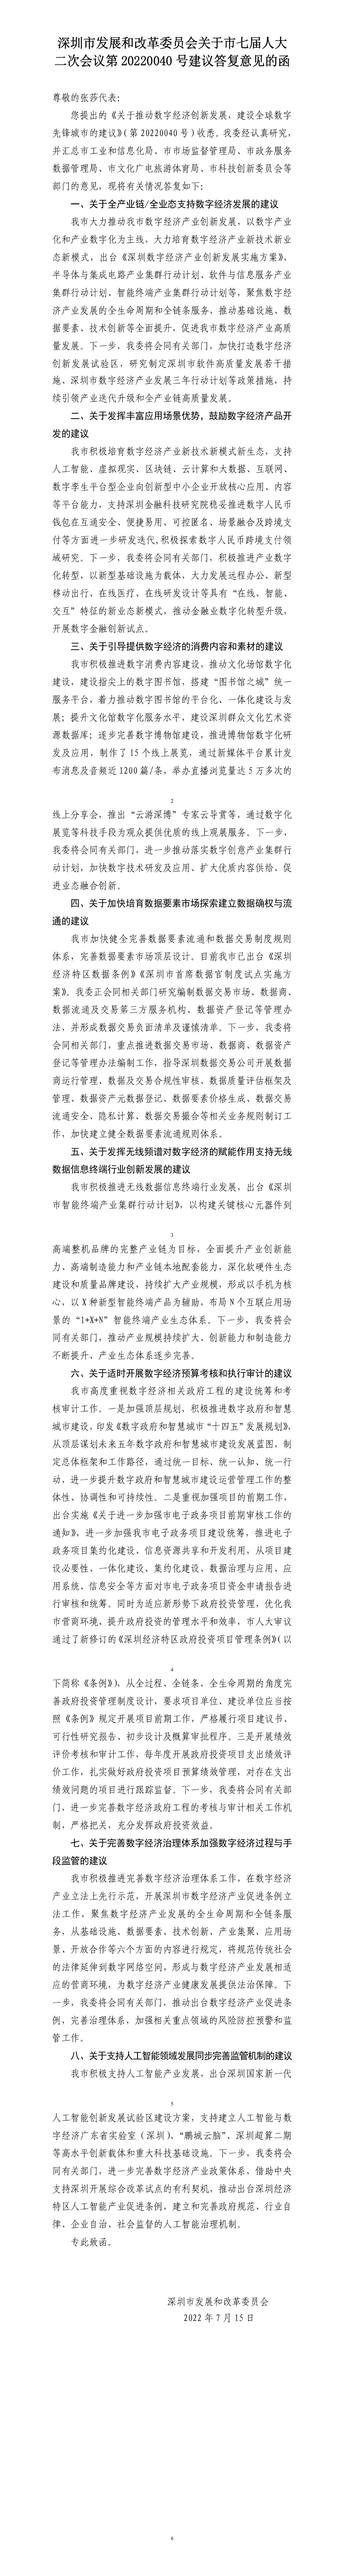 深圳市发展和改革委员会关于市七届人大二次会议第20220040号建议答复意见的函.jpg